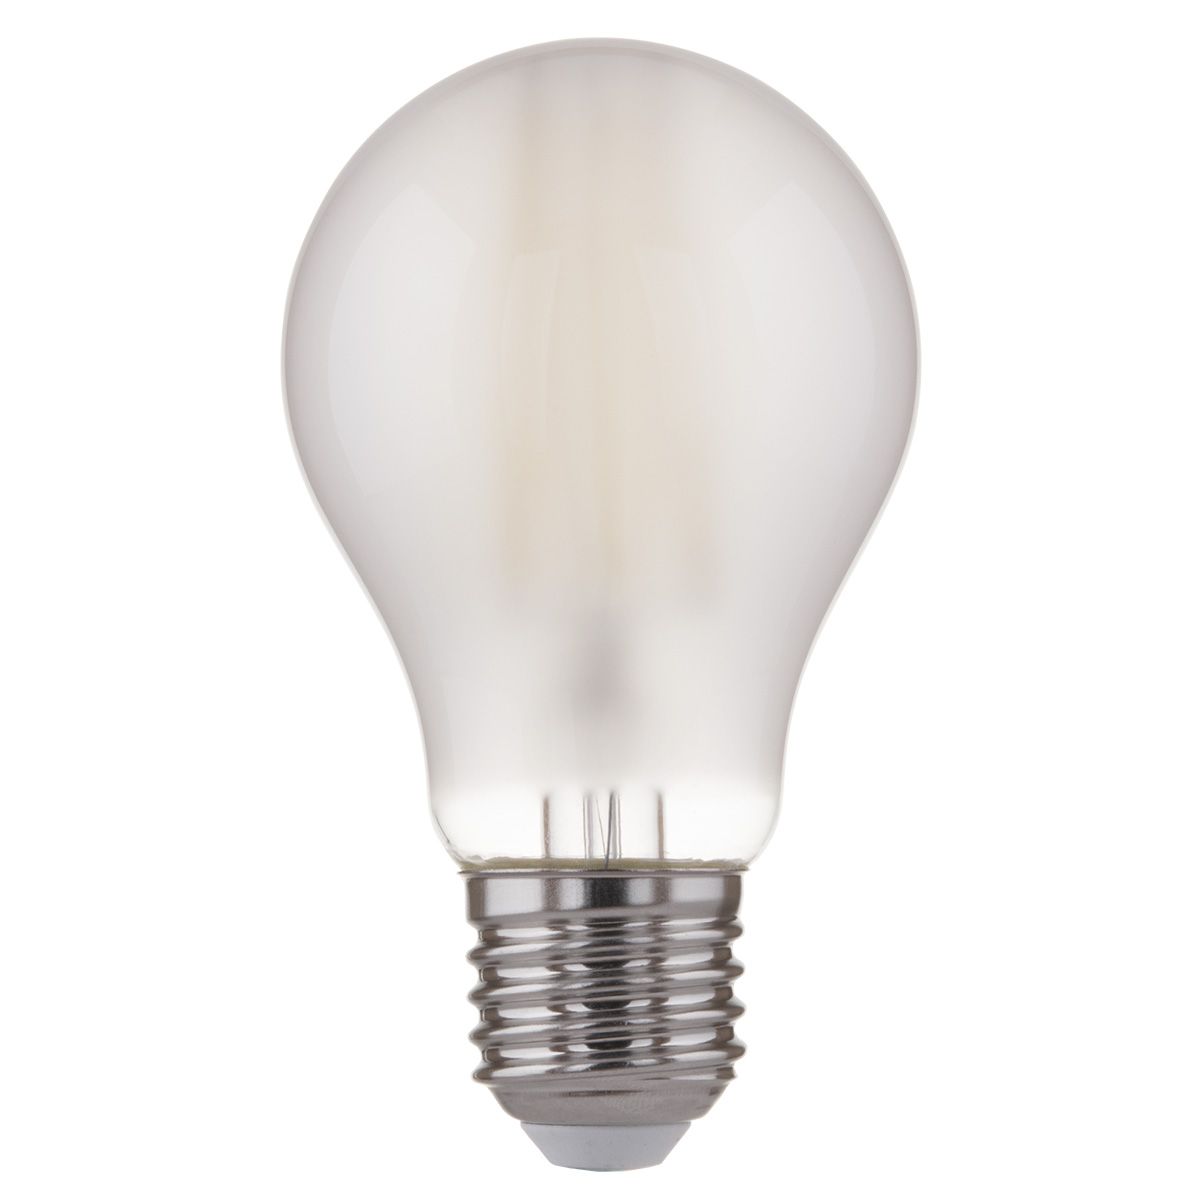 Филаментная светодиодная лампа A60 8W 4200K E27 Classic F 8W 4200K E27. Фото 2